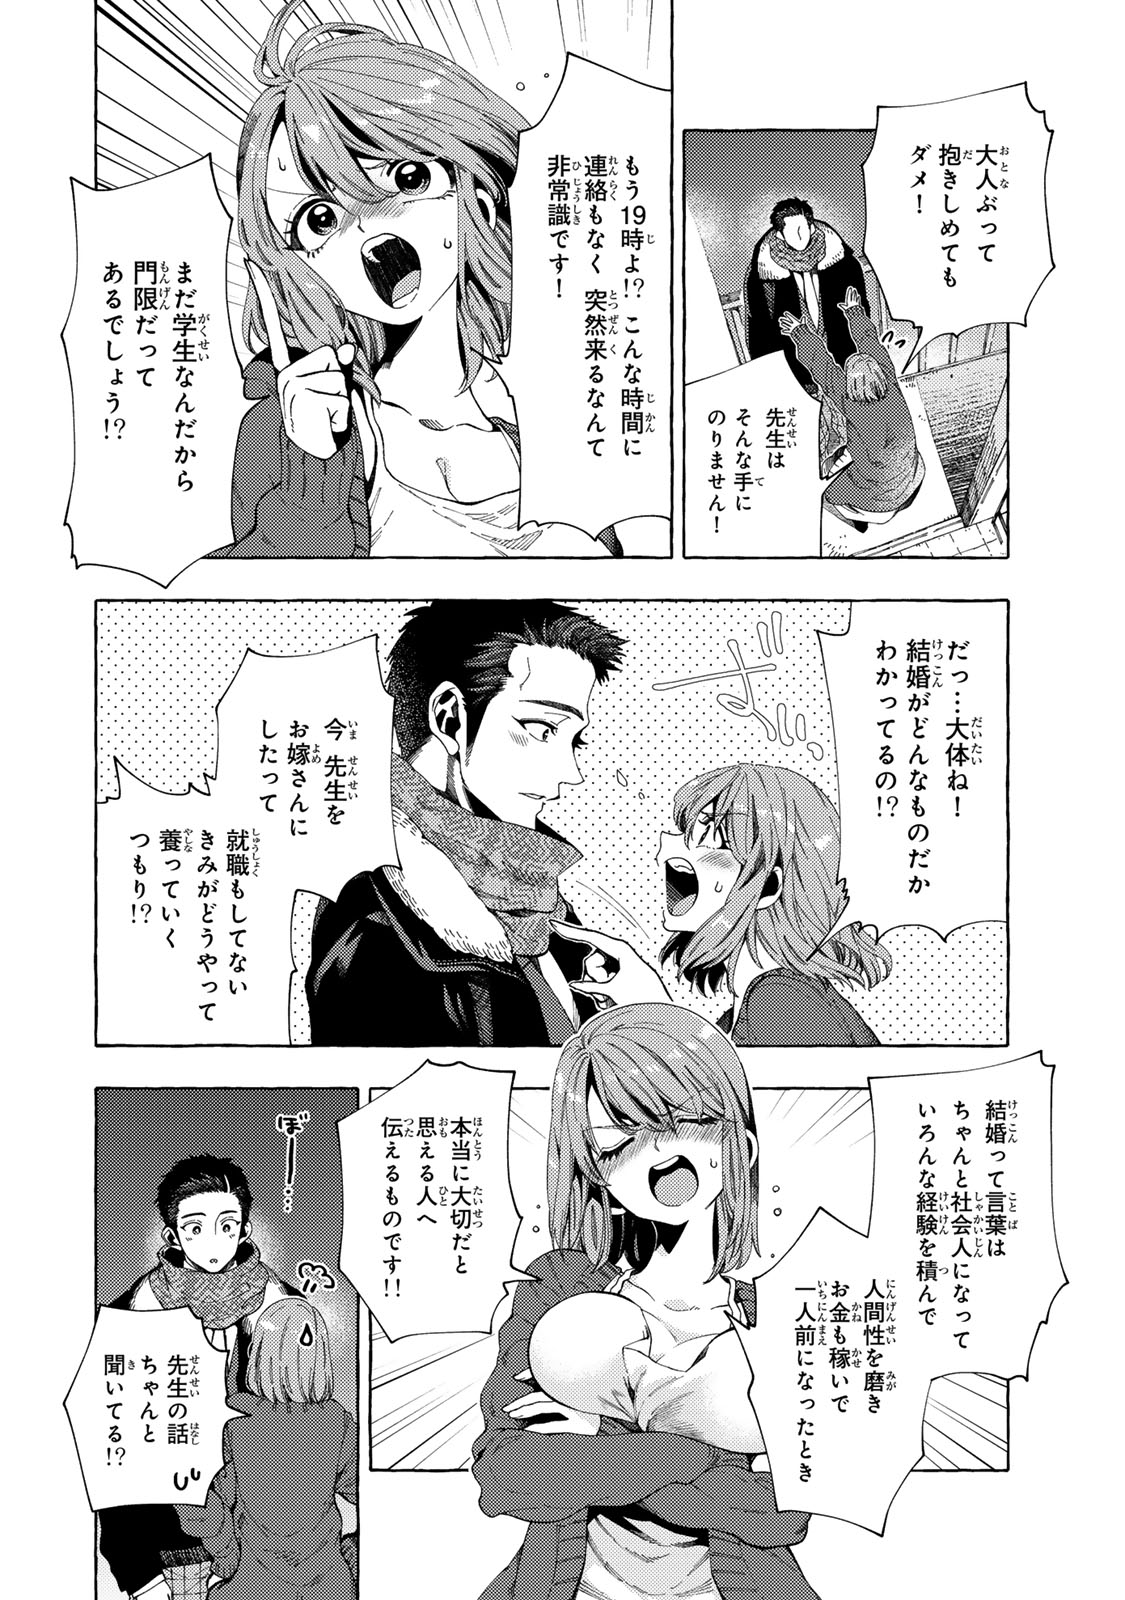 Oshiego-kun to wa Dekimasen - Chapter 3 - Page 2